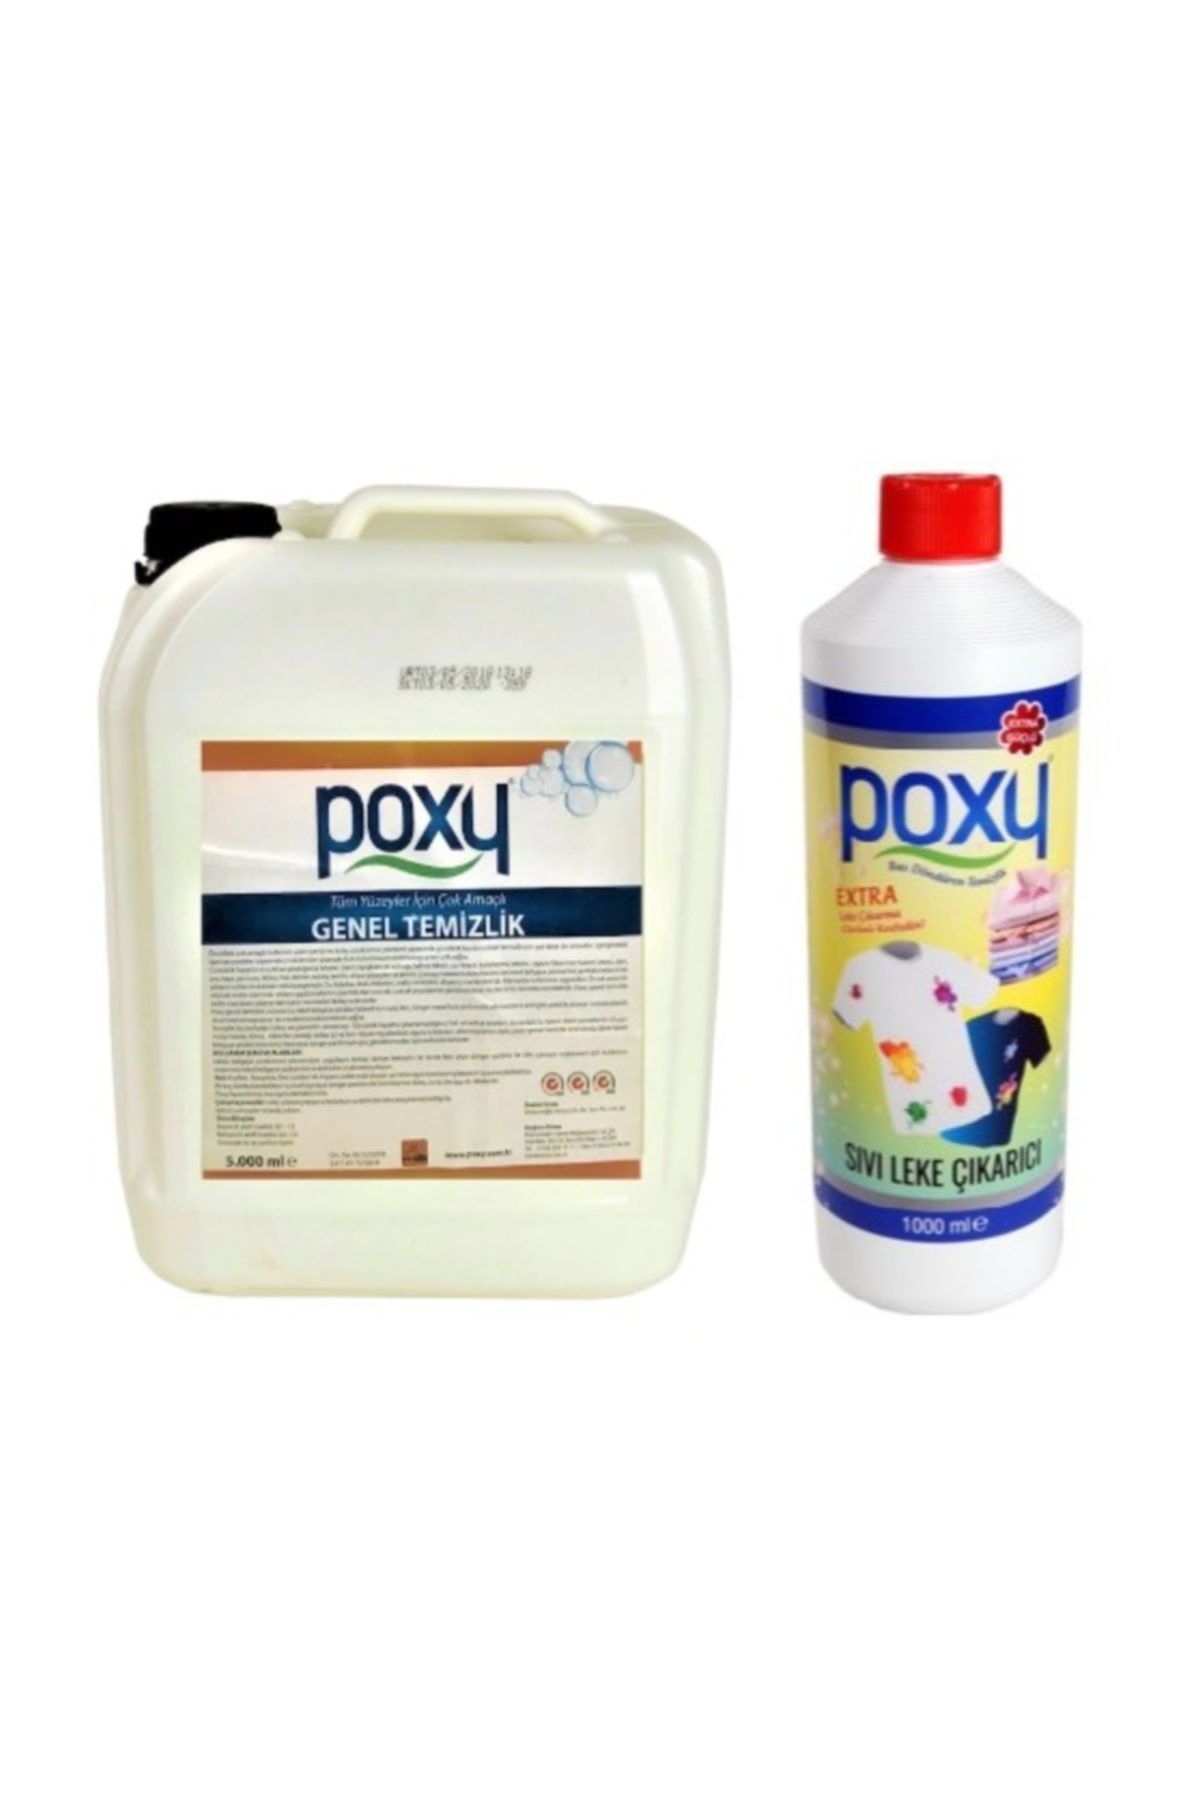 Poxy Genel Temizlik 5 Kg &  Sıvı Leke Çıkarıcı 1 Kg